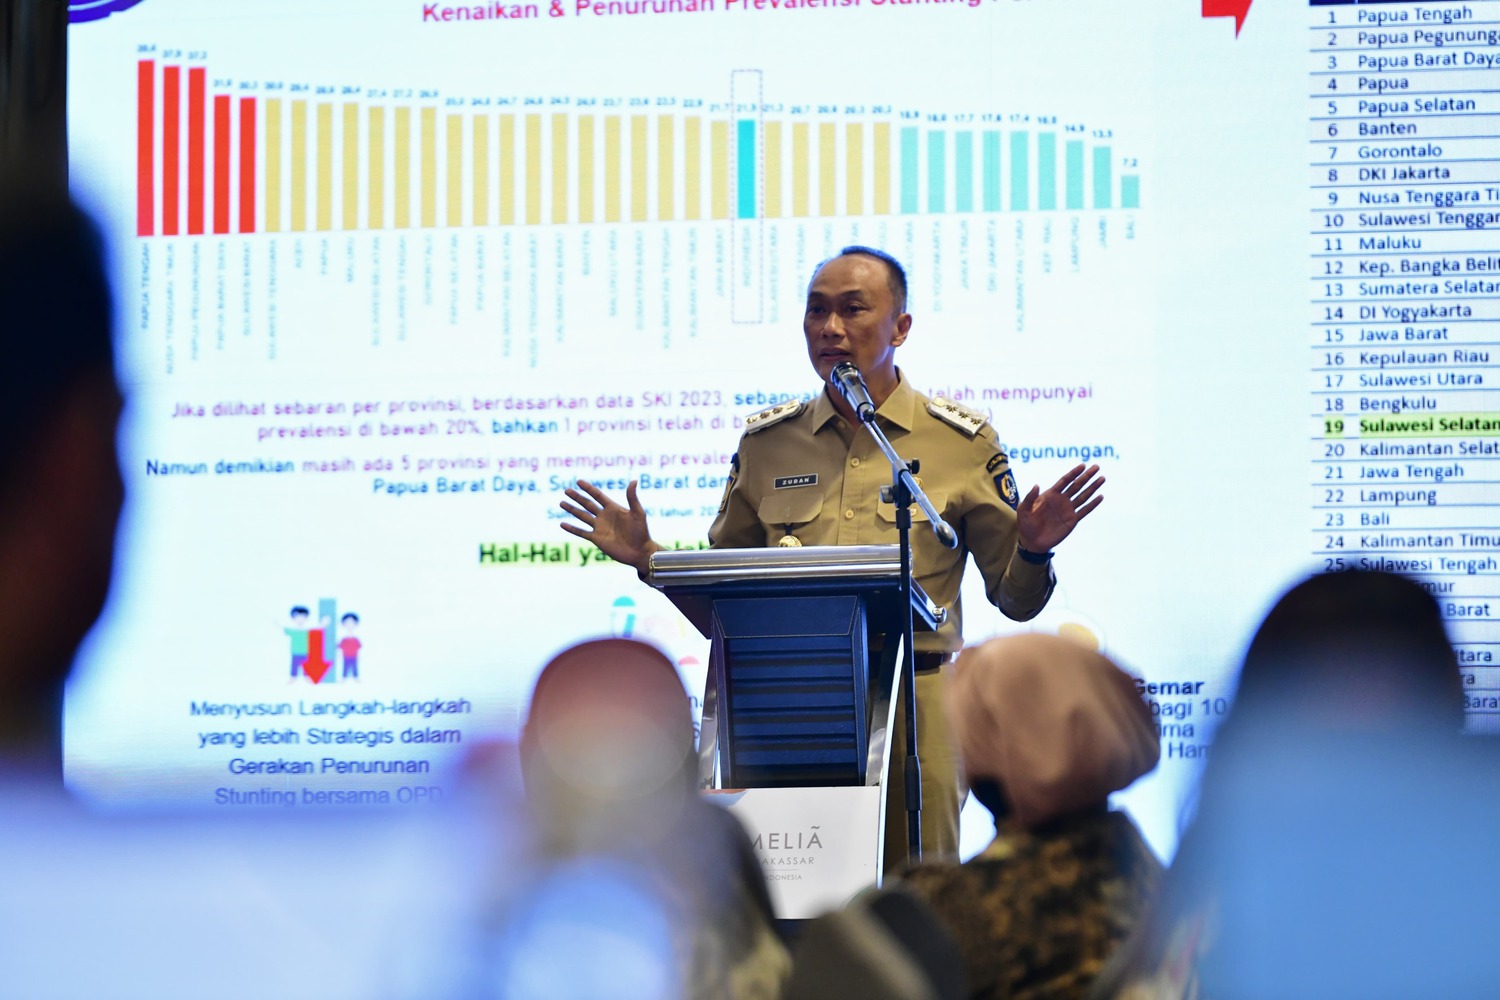 Perkuat Gerakan Nasional Percepatan Penanganan Stunting, Berikut Langkah Penjabat Gubernur Sulawesi Selatan Prof Zudan